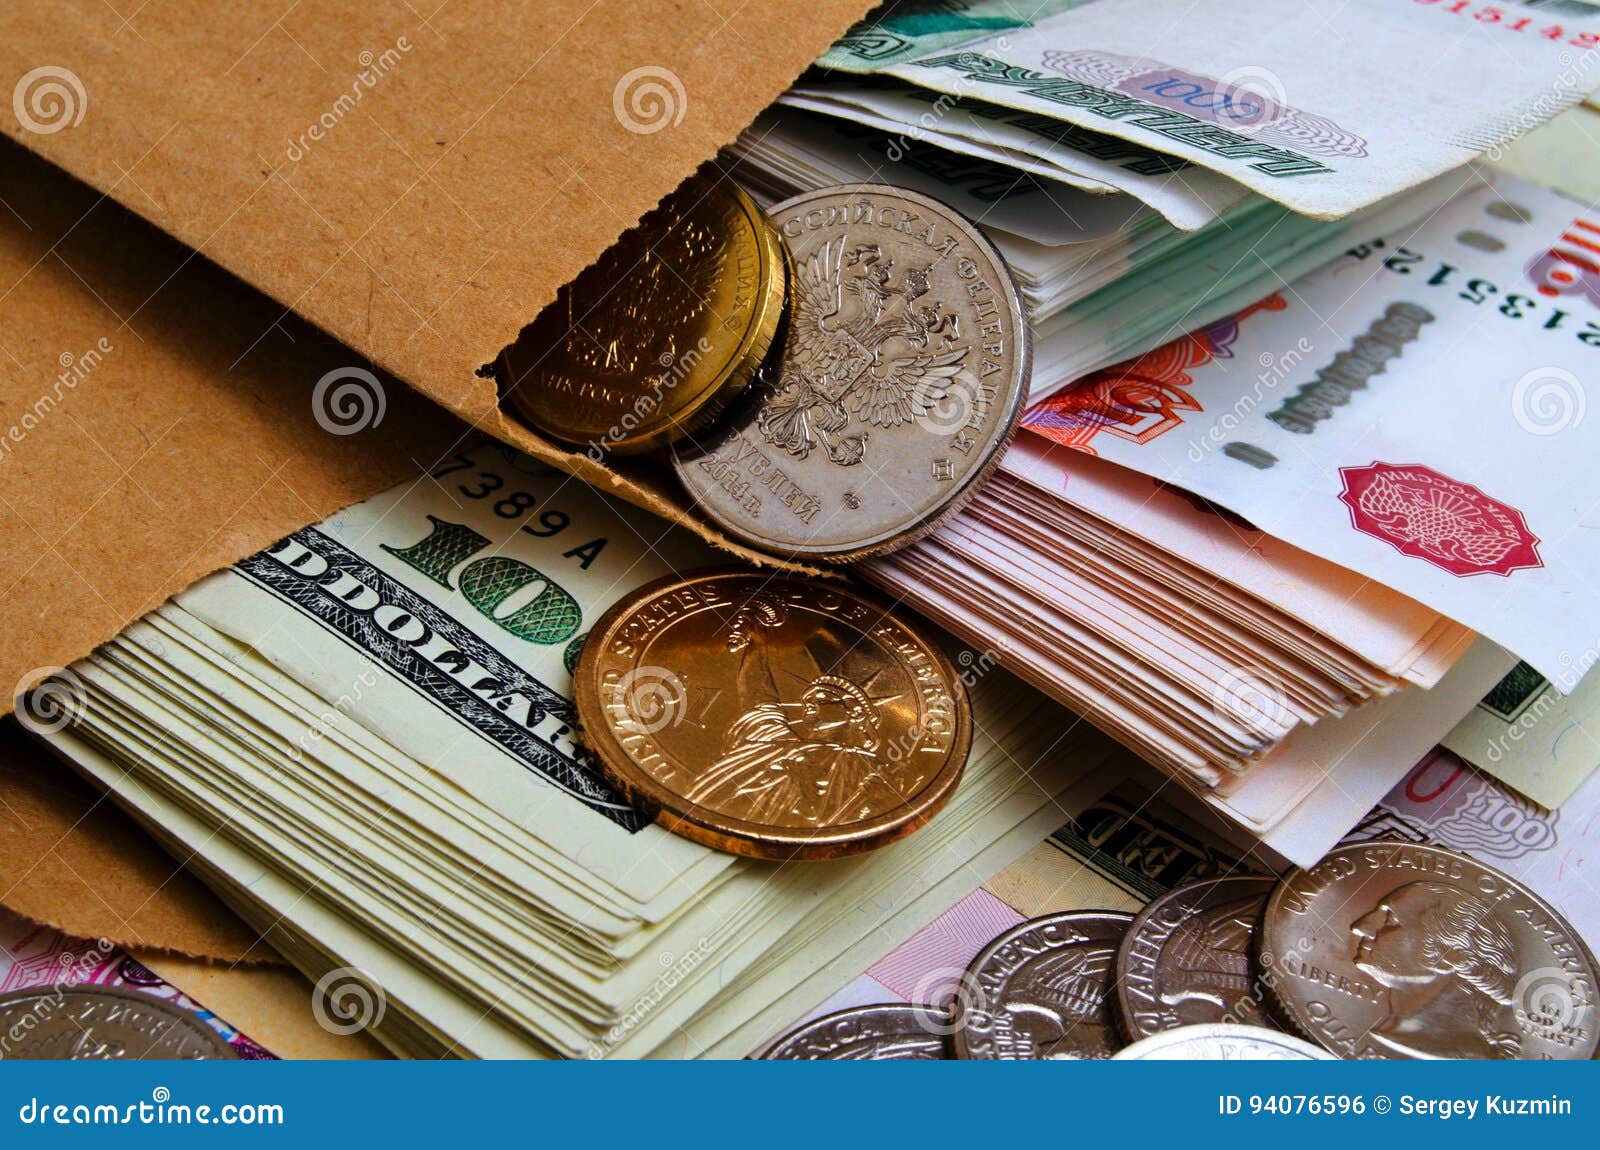 ruble dollar ÃÂurrency speculation.